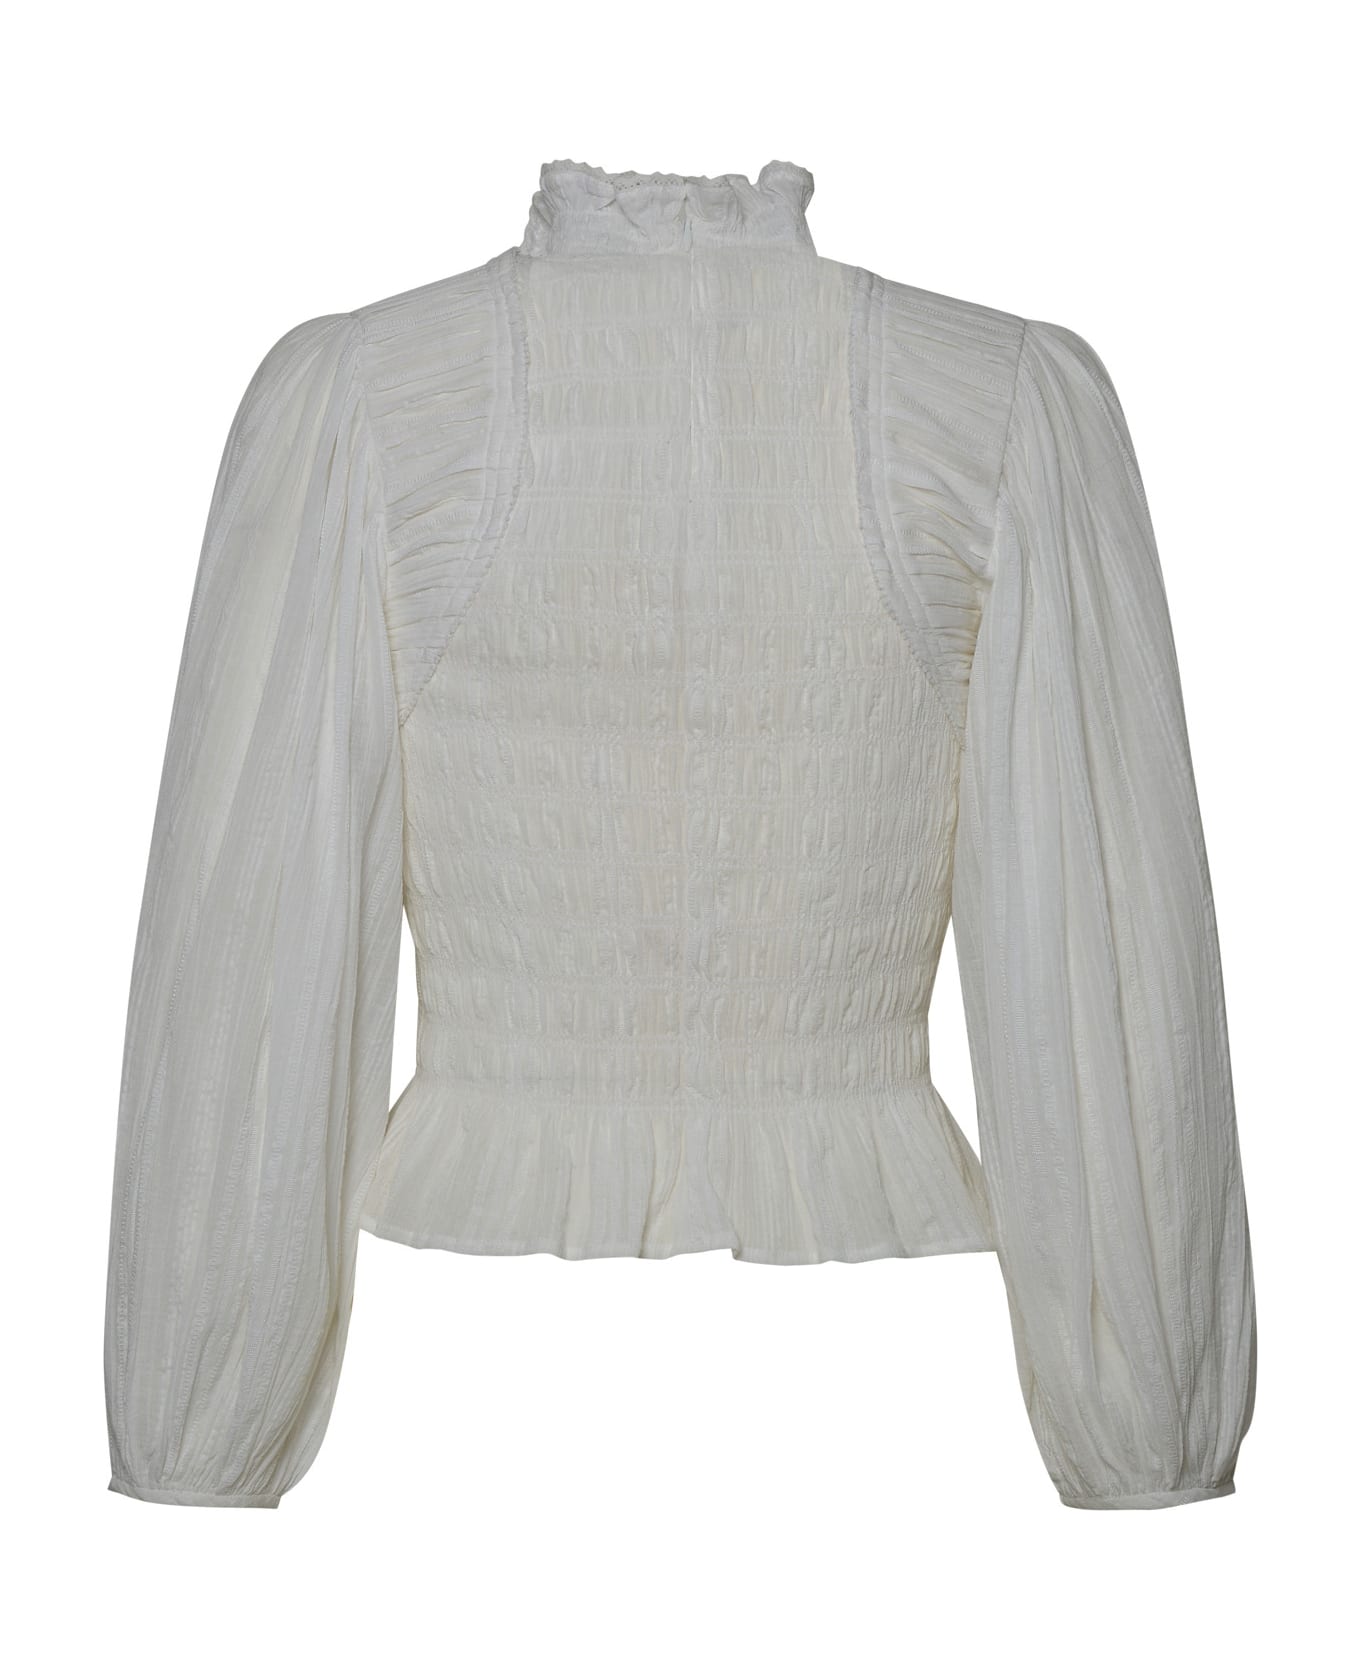 Marant Étoile Idris' White Cotton Top - White